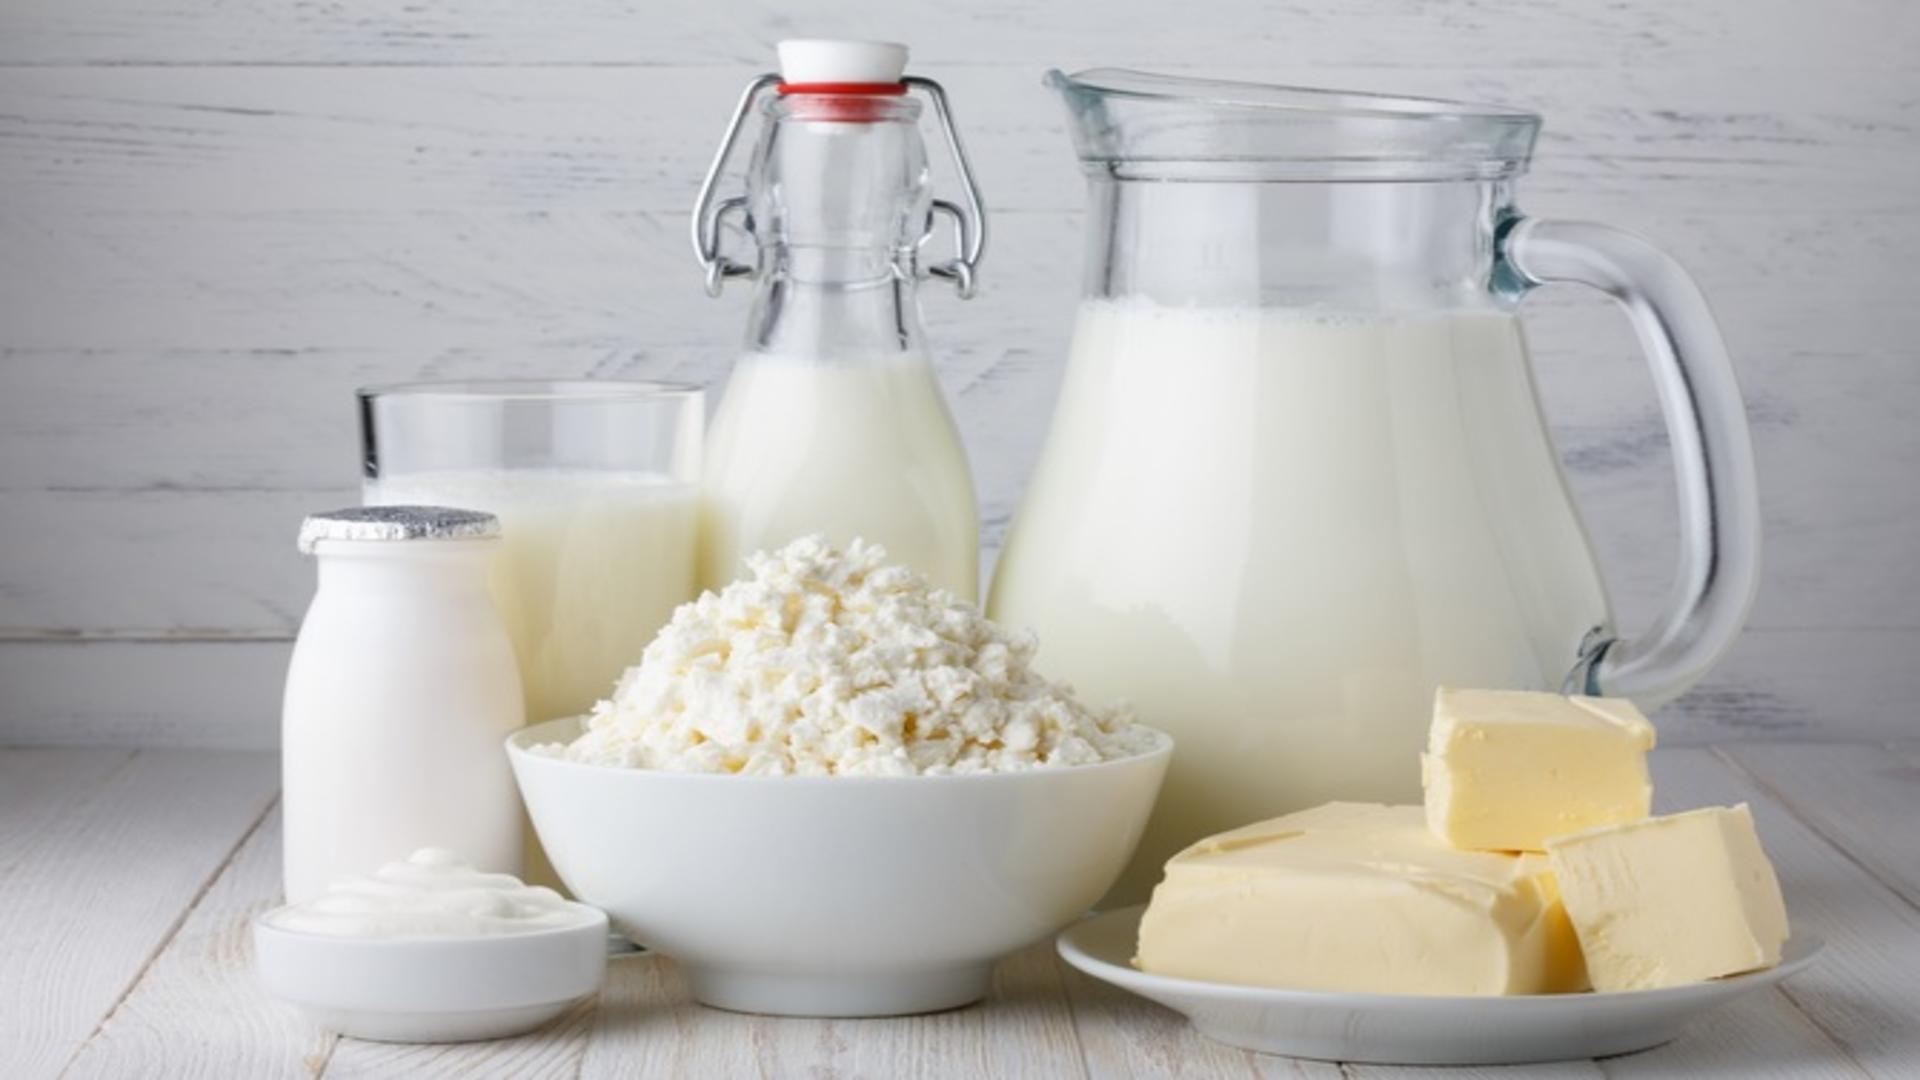 Lactate contrafăcute, în magazinele românești: lapte îndoit cu apă, brânză sfărâmicioasă. Șocant ce arată testele inspectorilor sanitar-veterinari